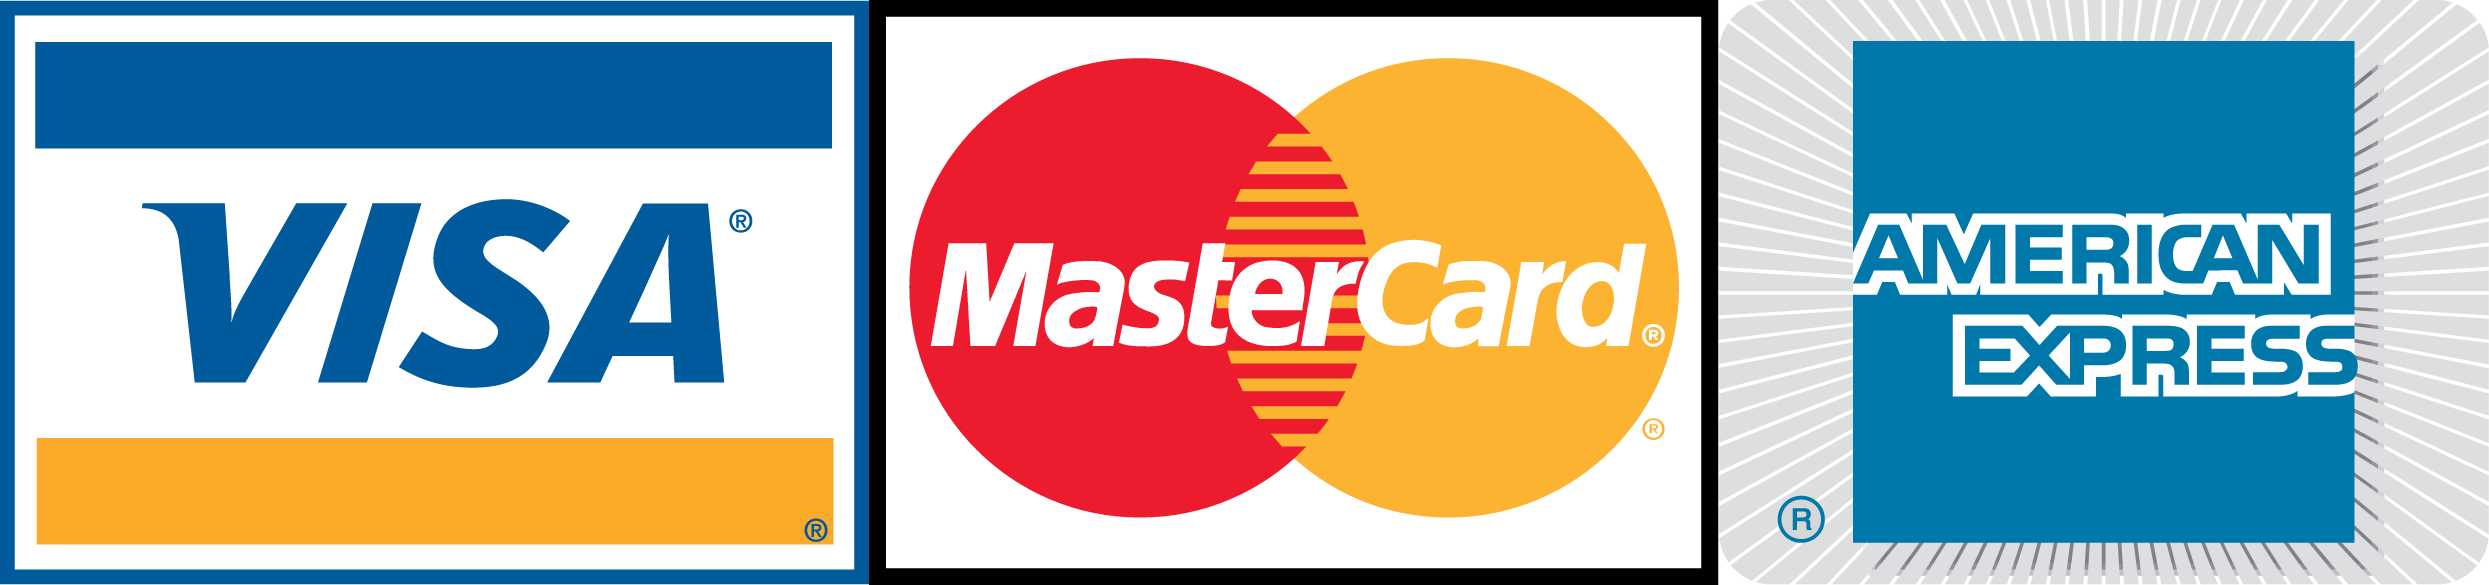 Visa master. Visa MASTERCARD. Логотип виза и Мастеркард. Логотип платежной системы Мастеркард. Visa MASTERCARD American Express.